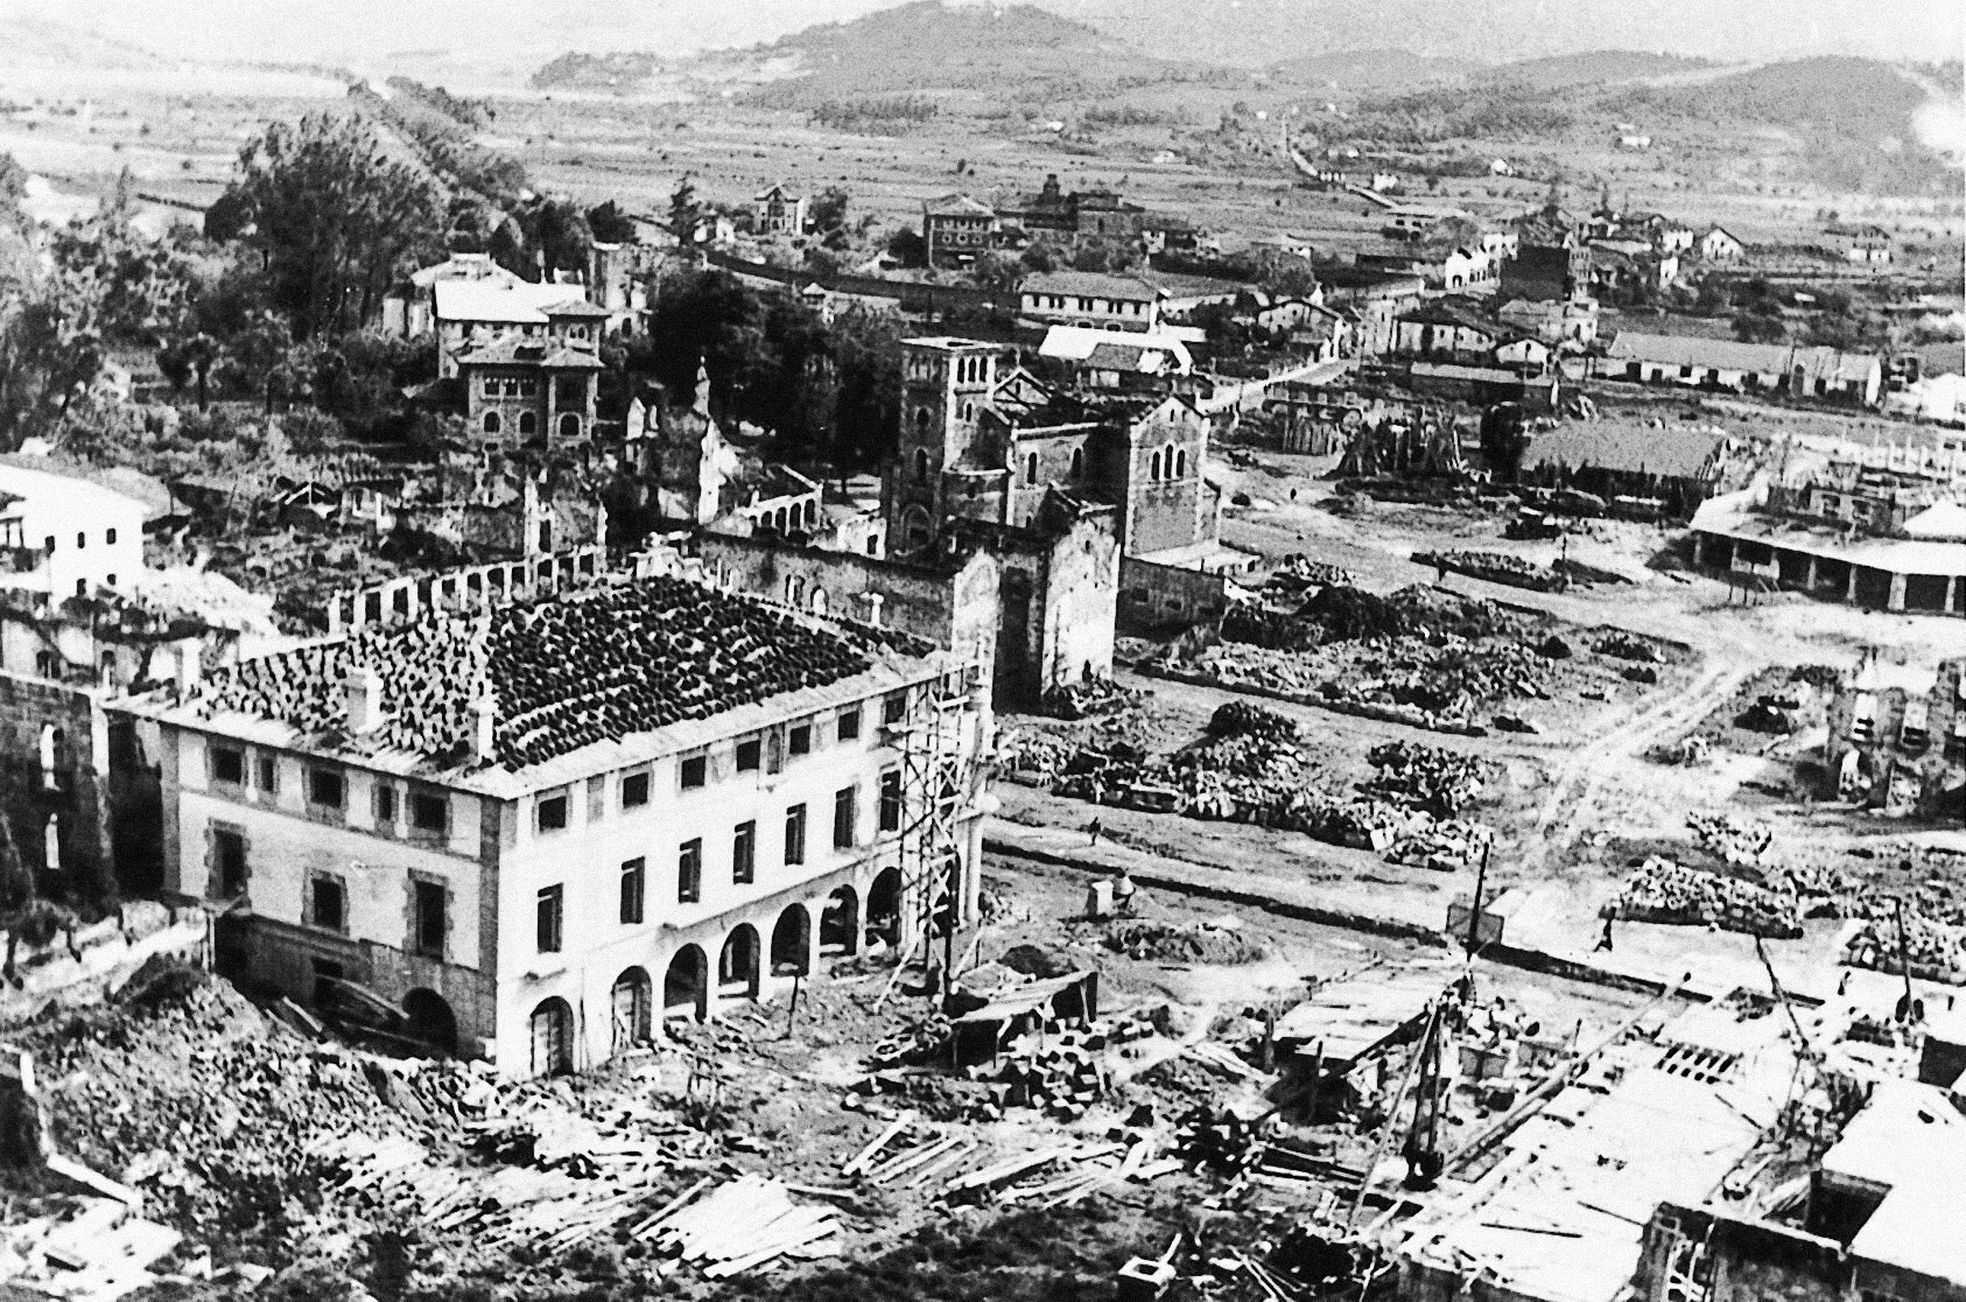 Fotogalerie / Guernica / Španělská občanská válka / Bombardování / Před 85 lety bylo baskické město Guernica ničivě bombardováno německým letectvem